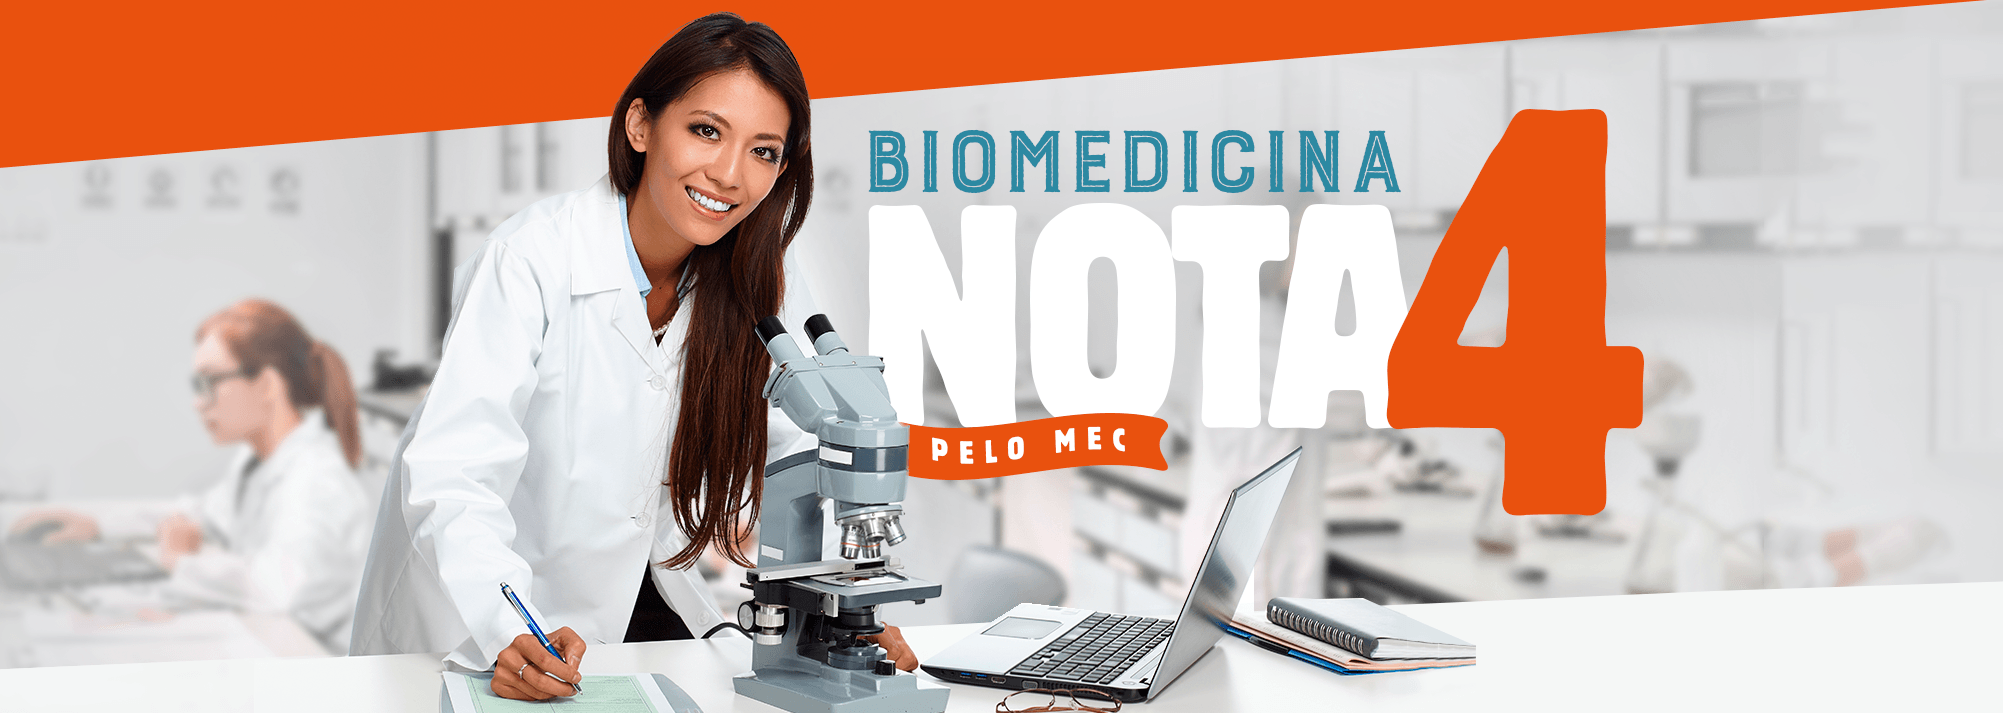 biomedicina-nova-4-uninorte